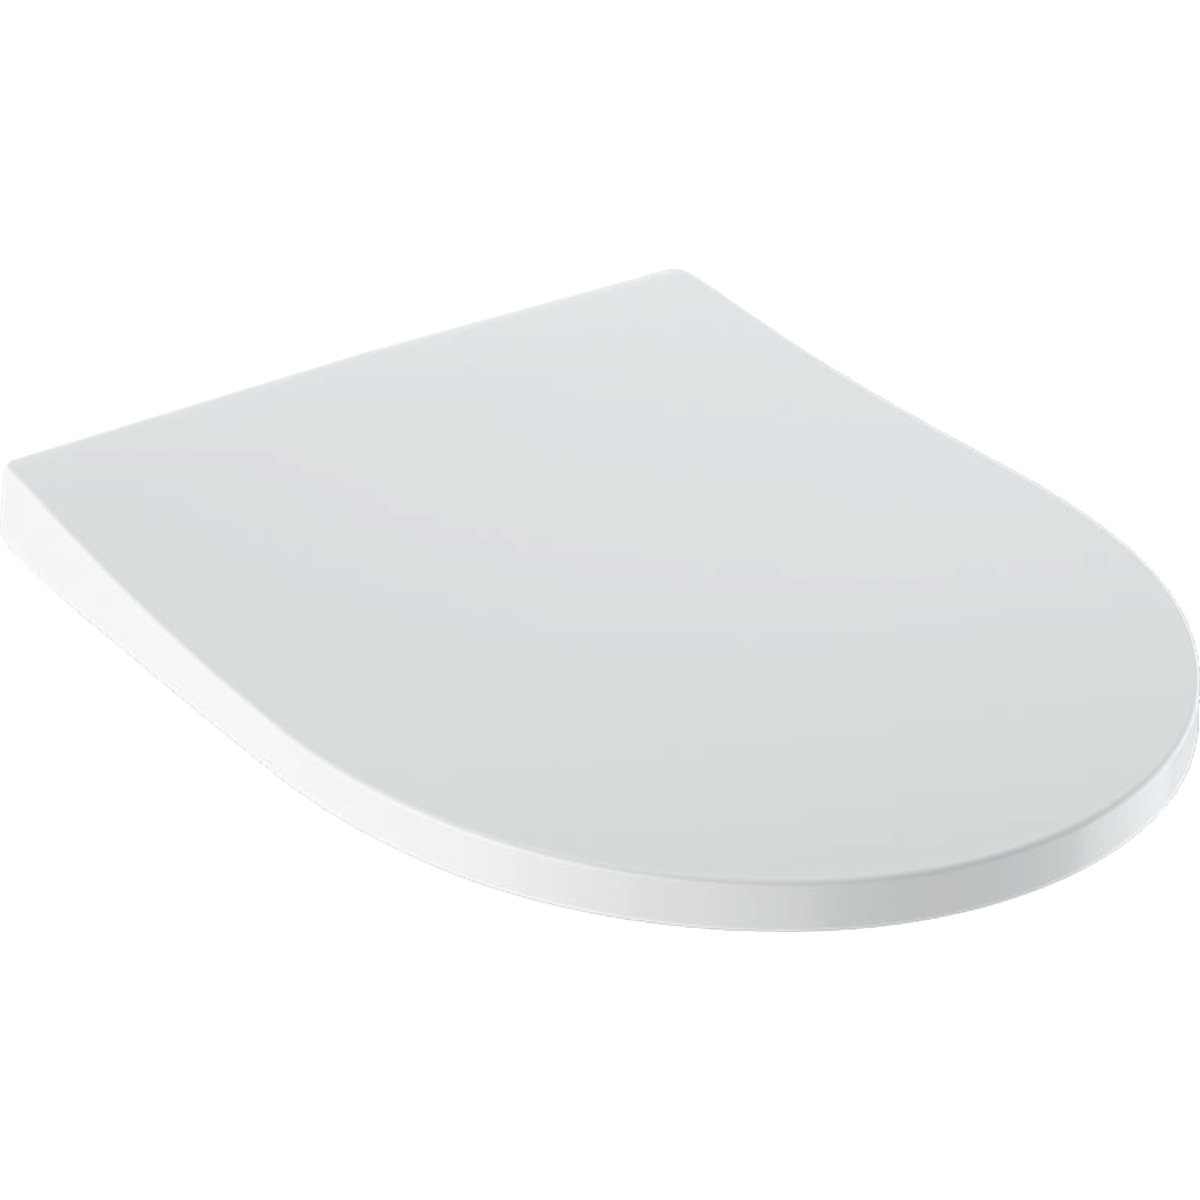 Geberit iCon WC-Sitz Slim mit Deckel, Wrap over, antibakteriell, mit Absenkautomatik, weiß, schmales Design von Keramag GmbH